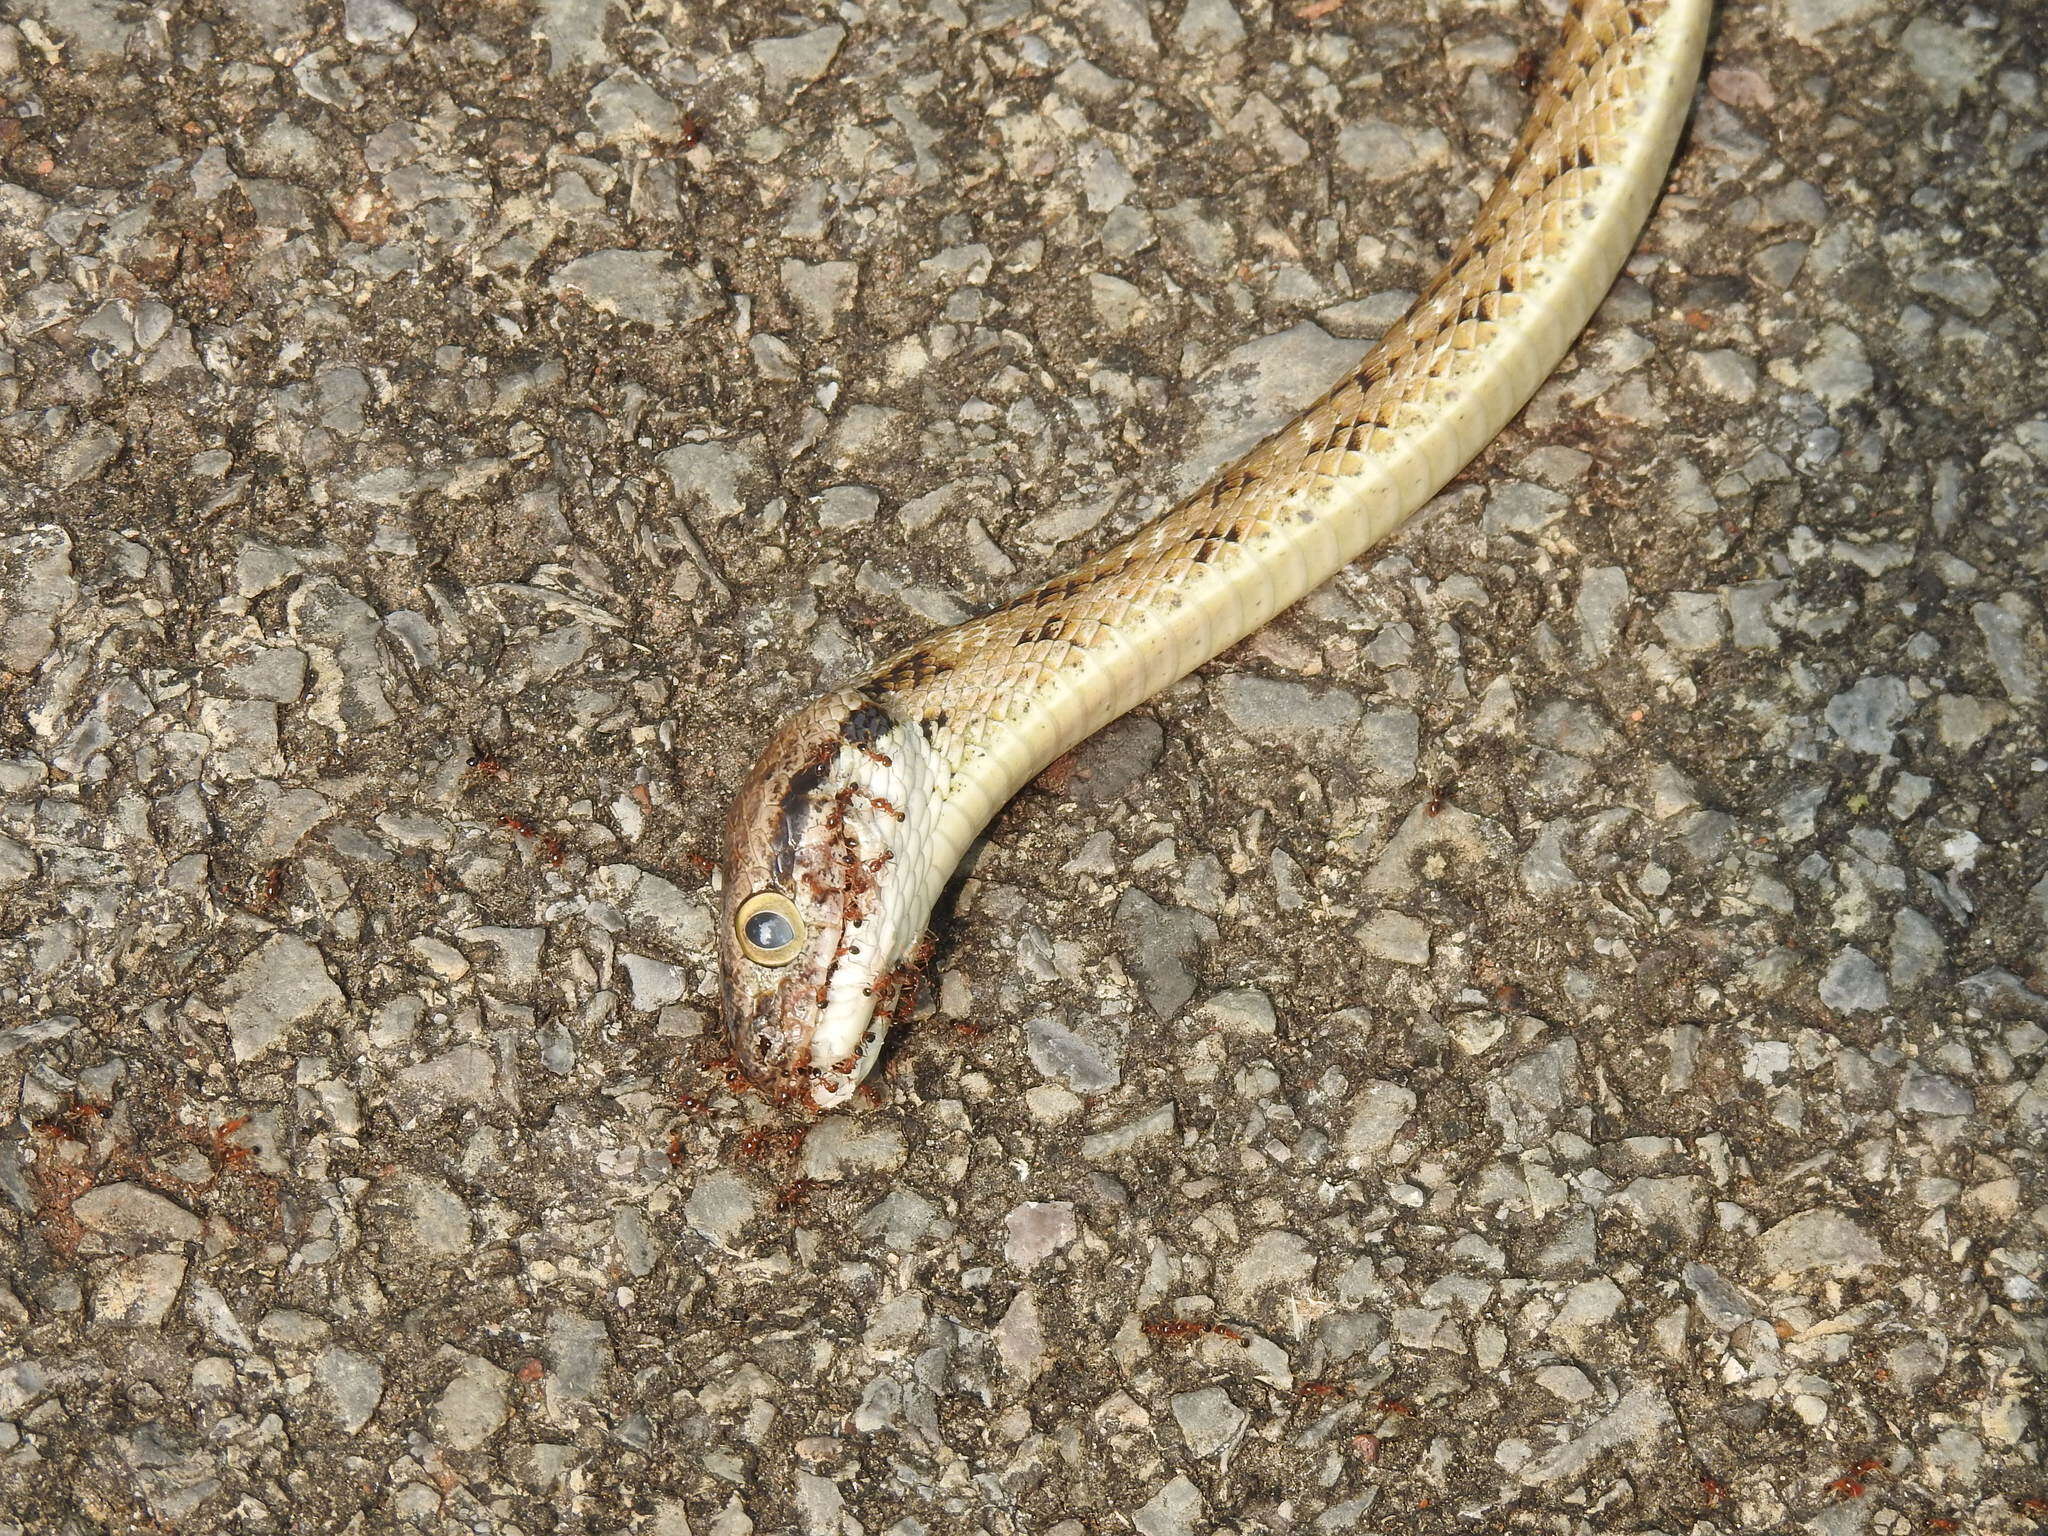 Image of Forsten's Cat Snake